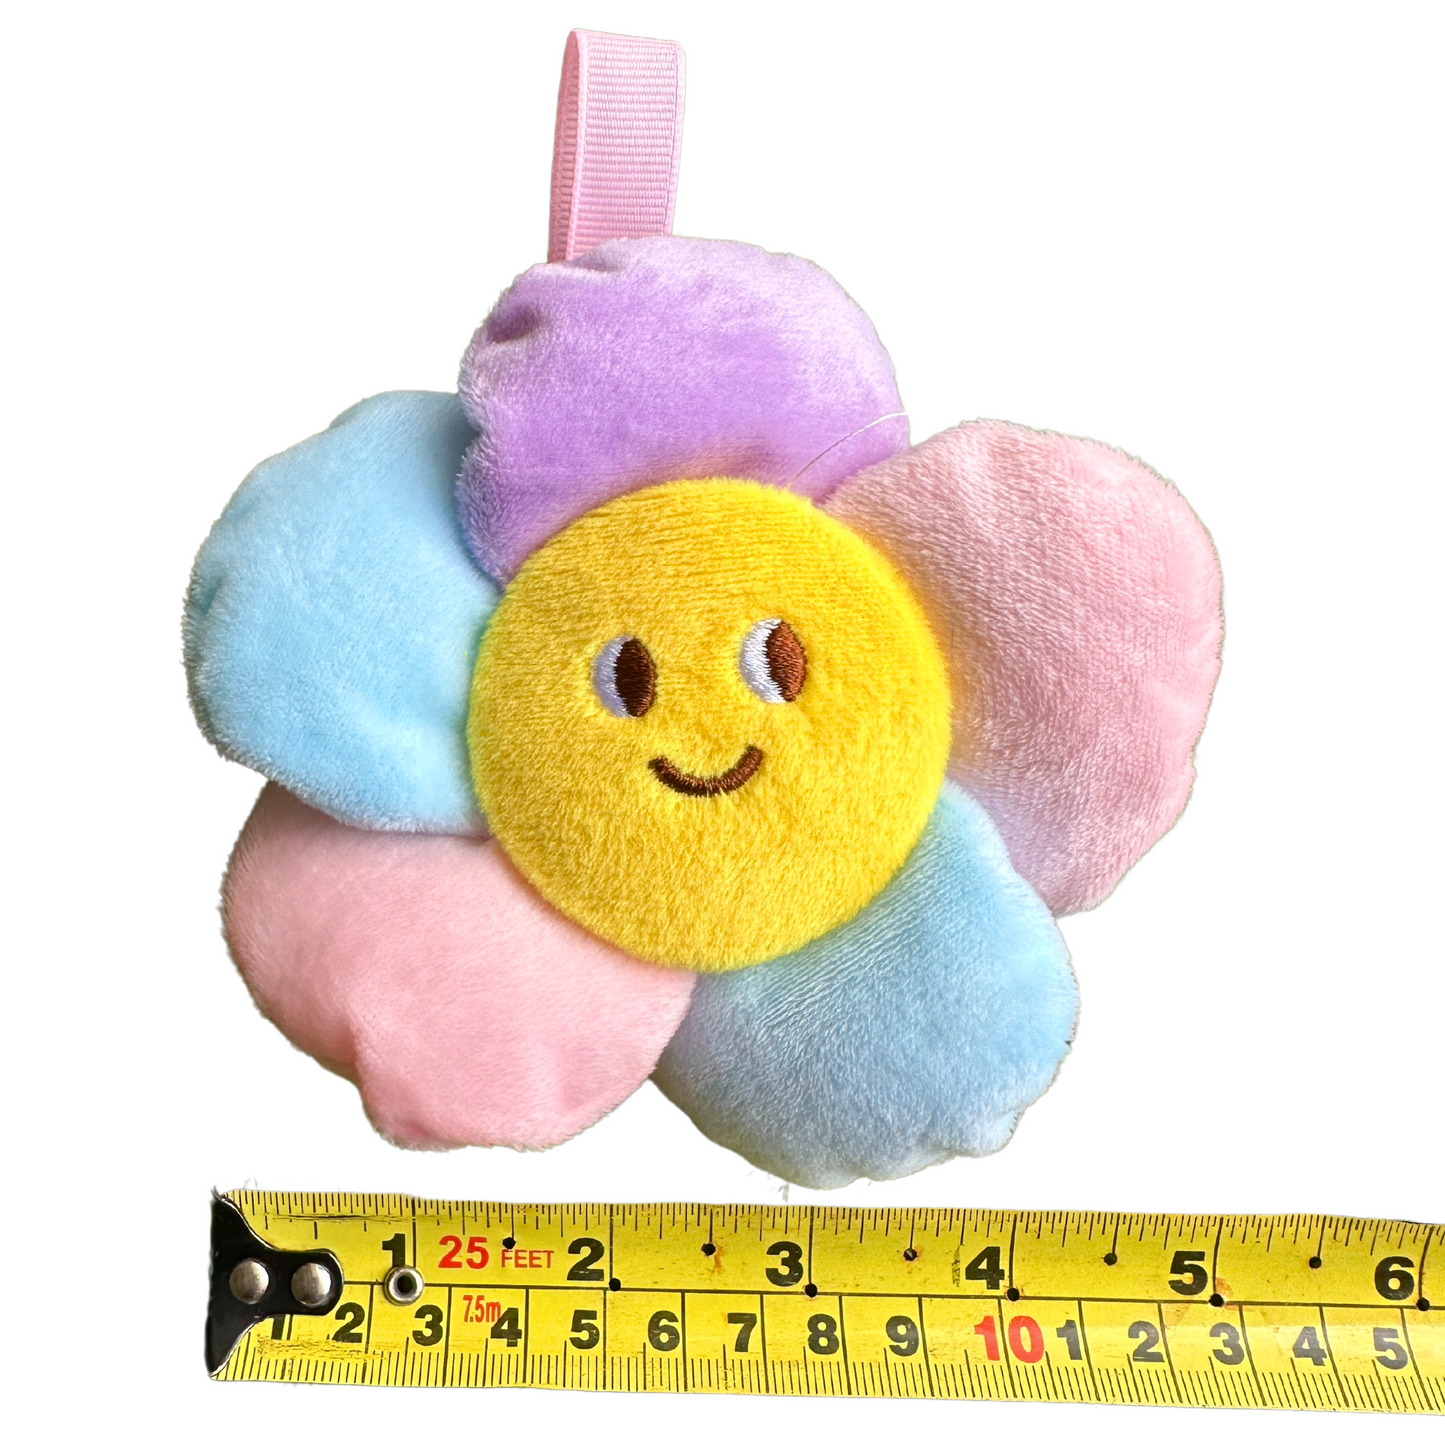 ($.95) 60pc - 4.25" Adorable Flower Plush